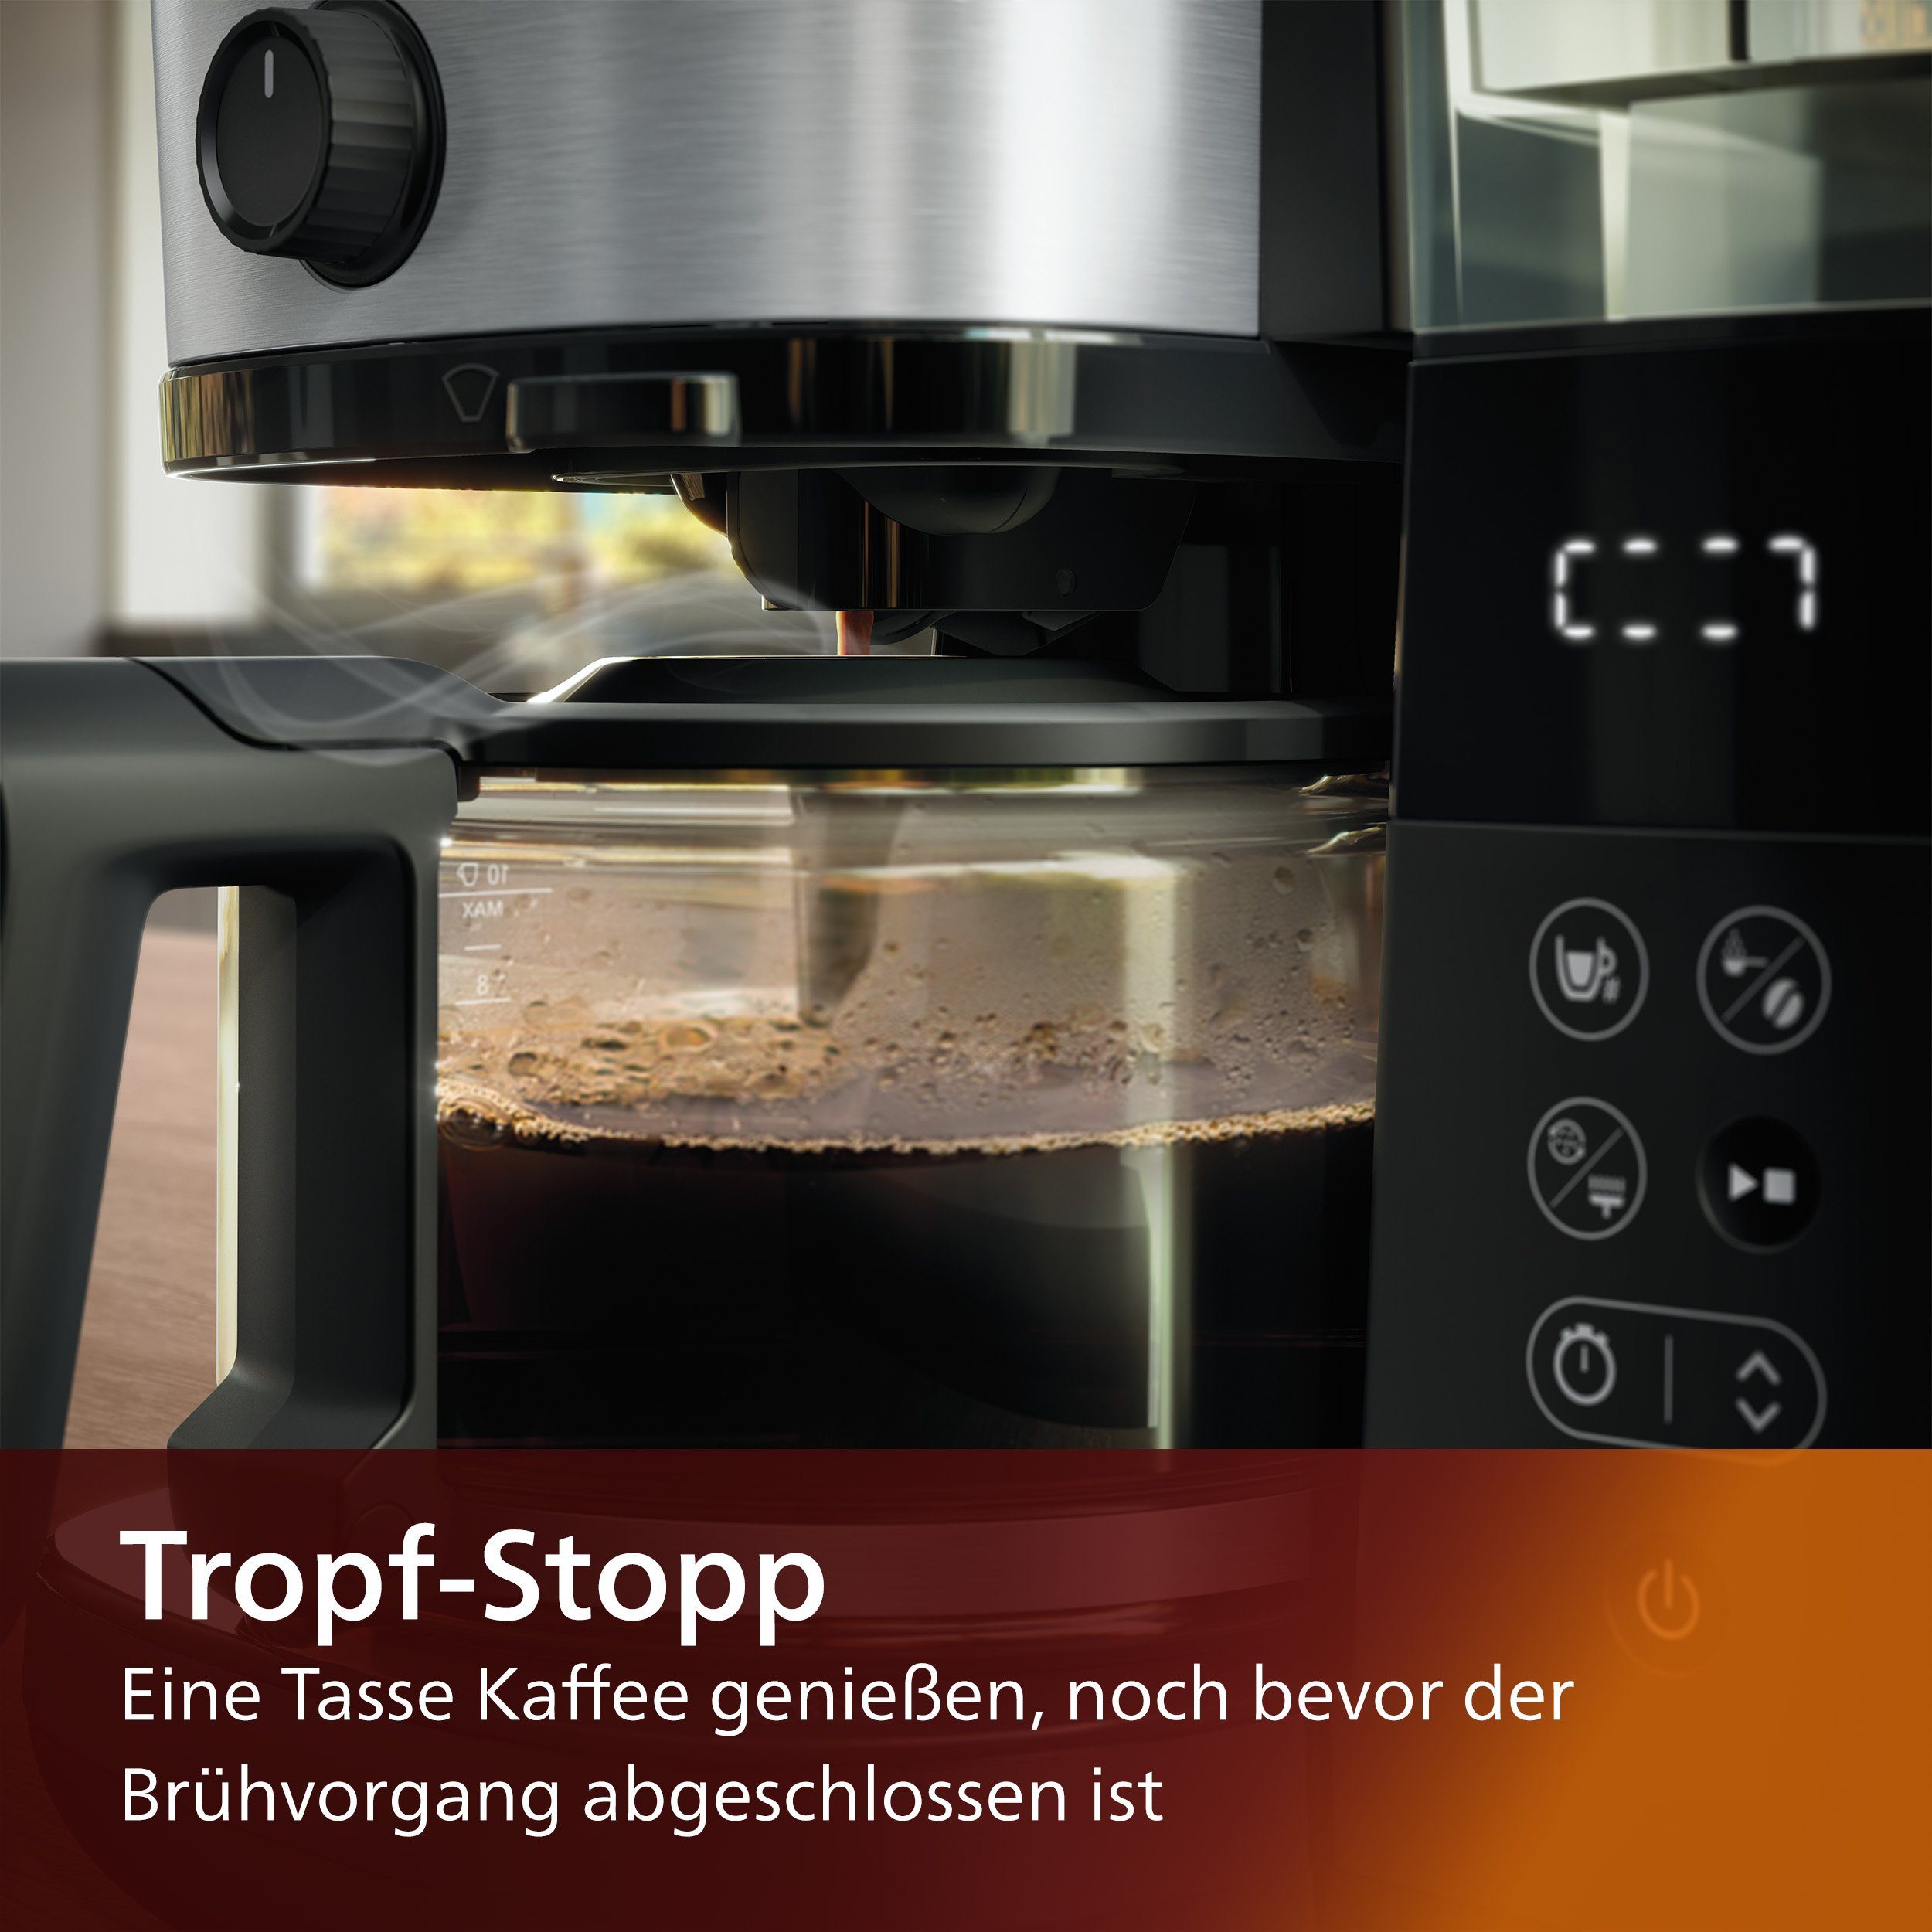 All-in-1 1x4, mit Dosierung Kaffeemaschine Brew, mit HD7888/01 Papierfilter Philips und Mahlwerk Kaffeebohnenbehälter Smart